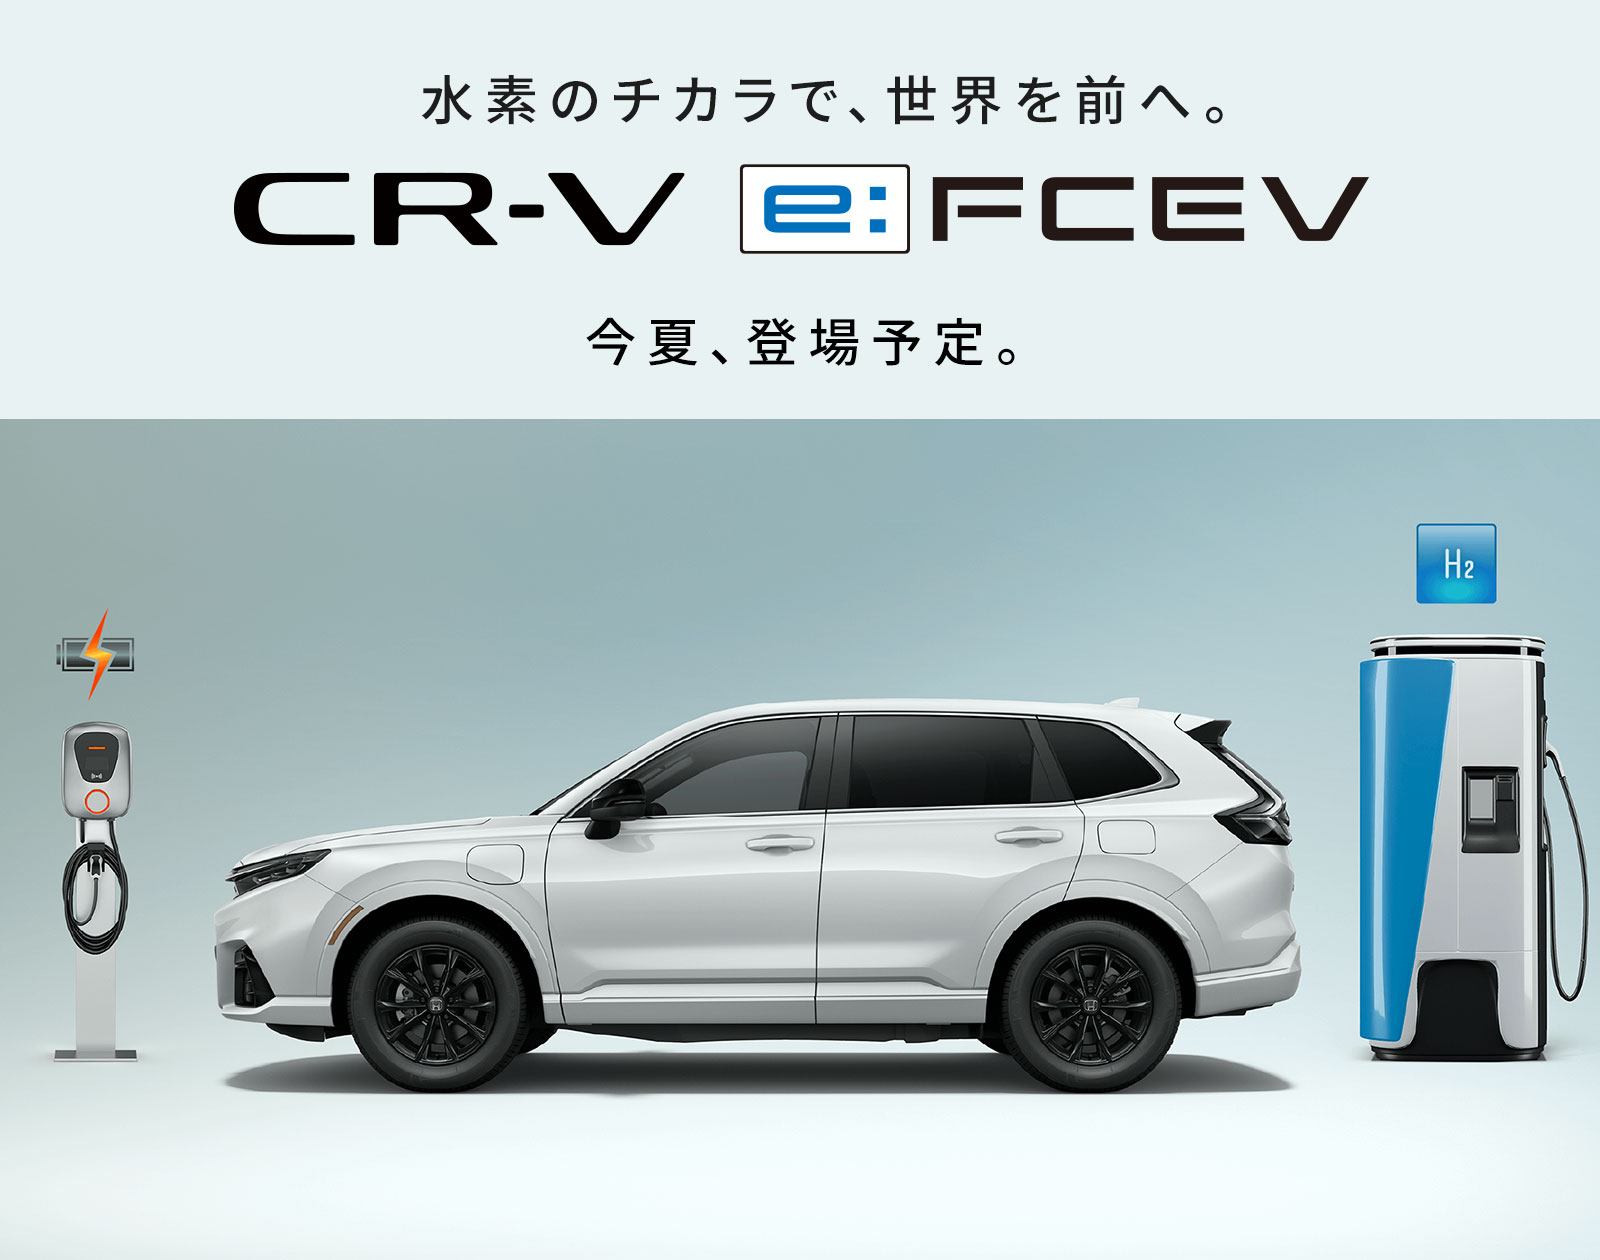 CR-V e:FCEV 水素のチカラで、世界を前へ。今夏、登場予定。